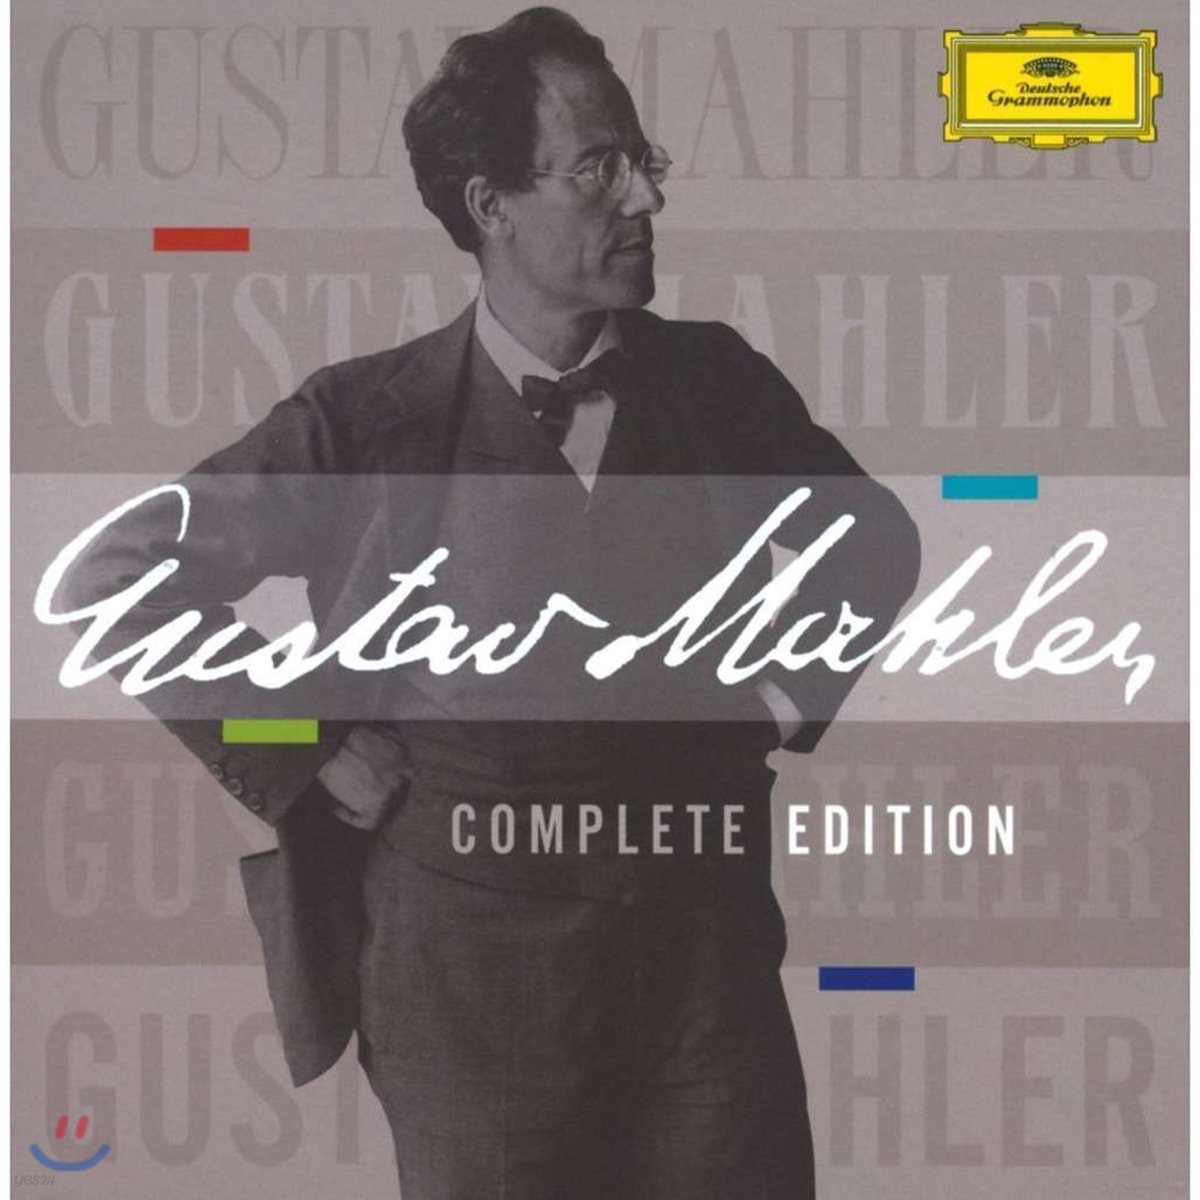 말러 탄생 150주년 기념 에디션 - 말러 전곡집 (Gustav Mahler Complete edition)